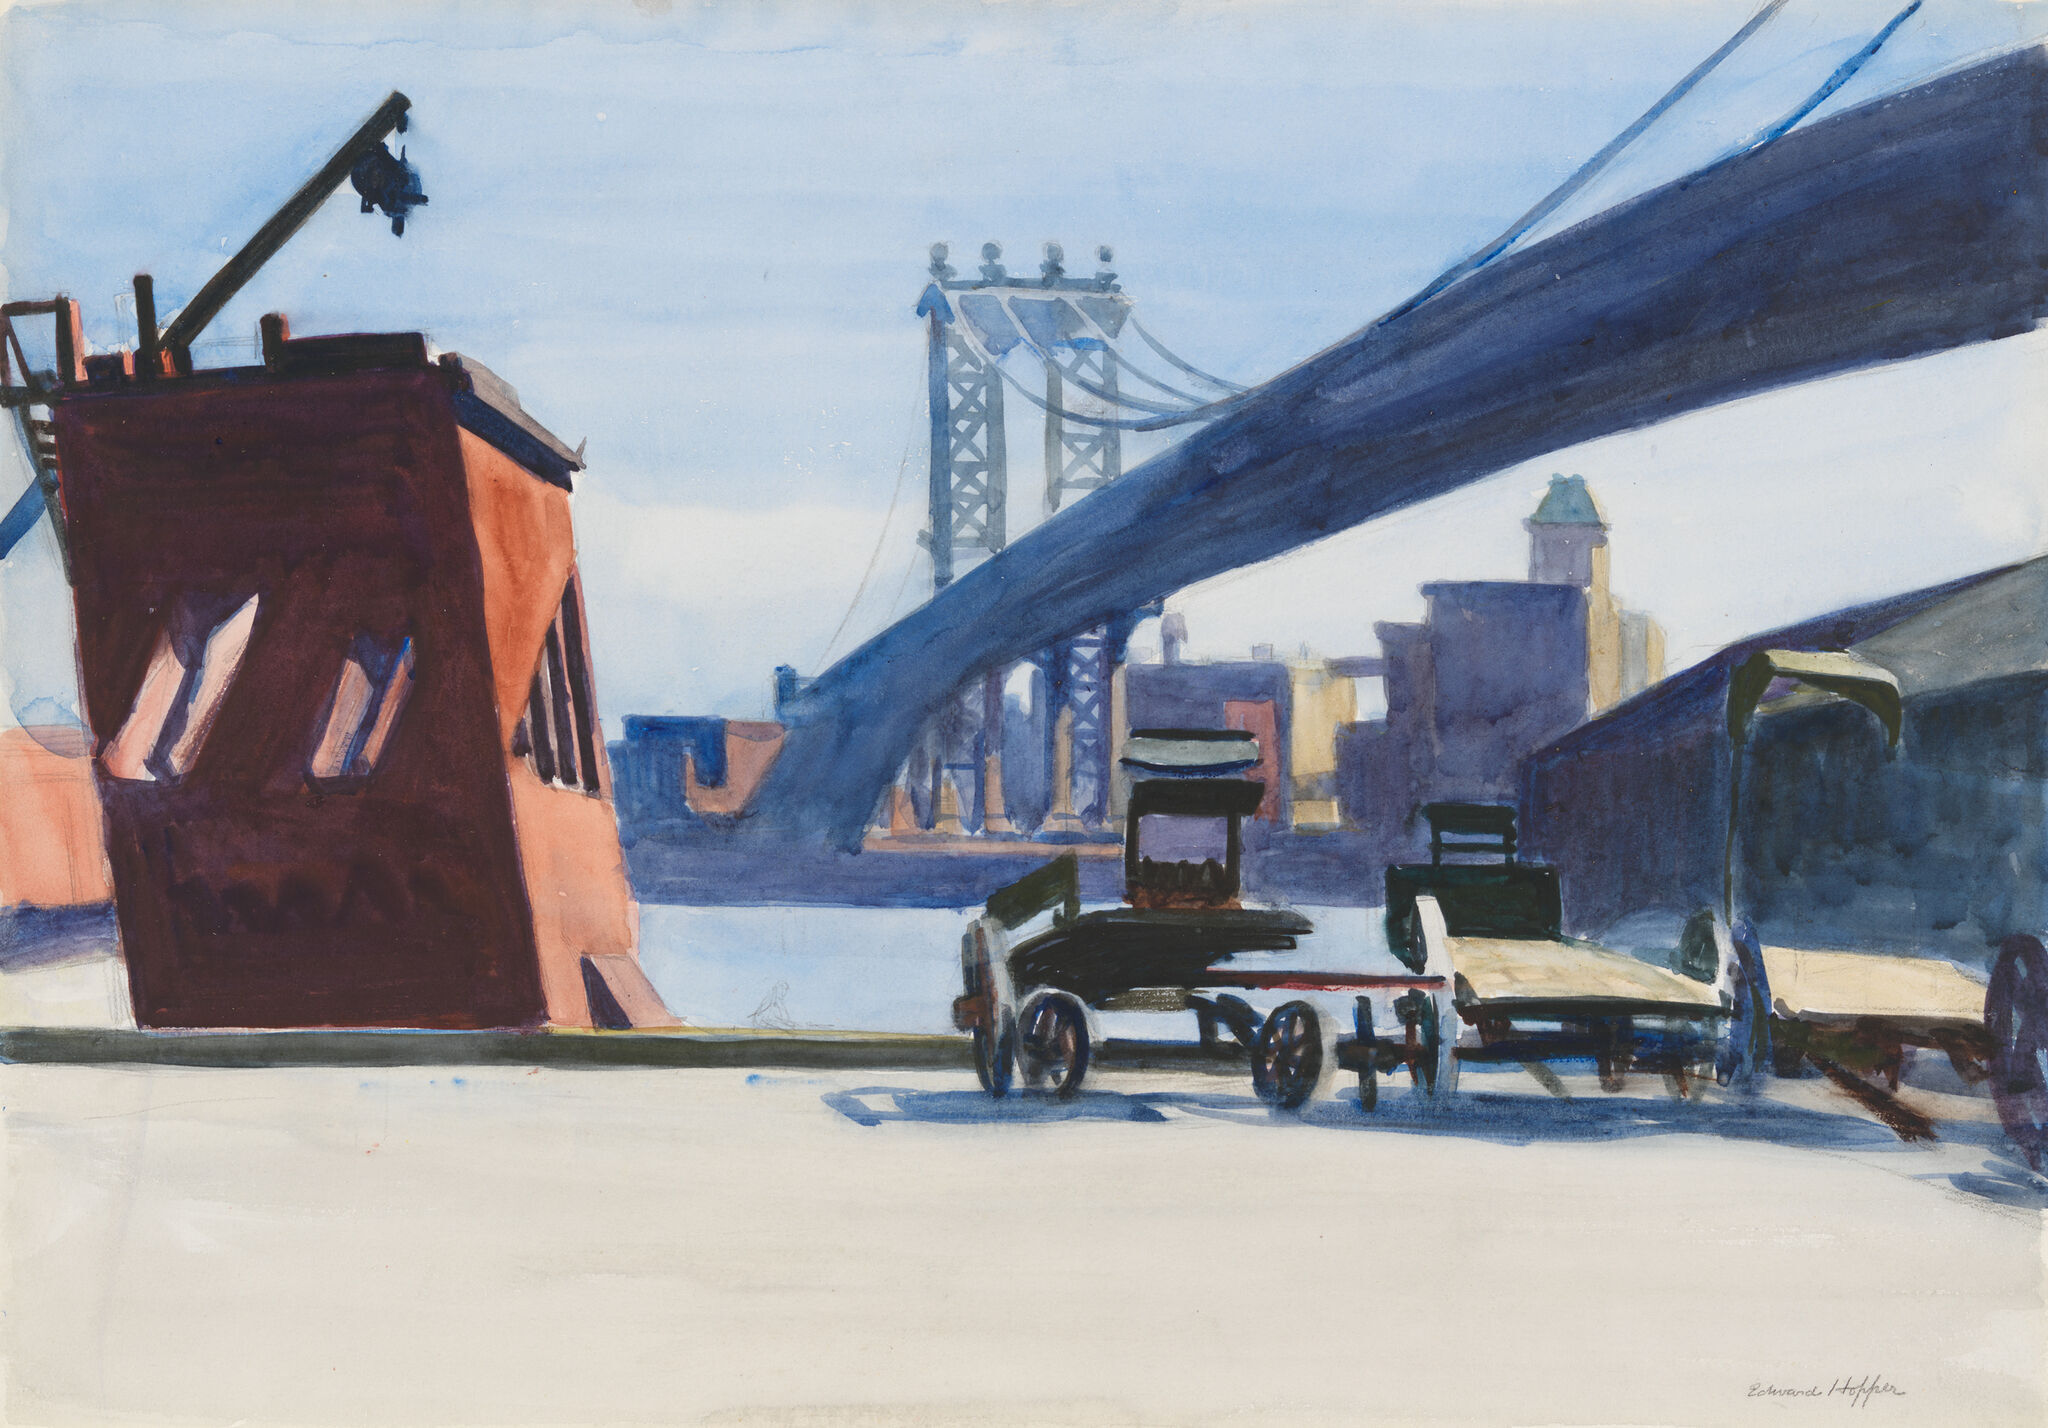 Edward Hopper's New York | Whitney Museum of American Art